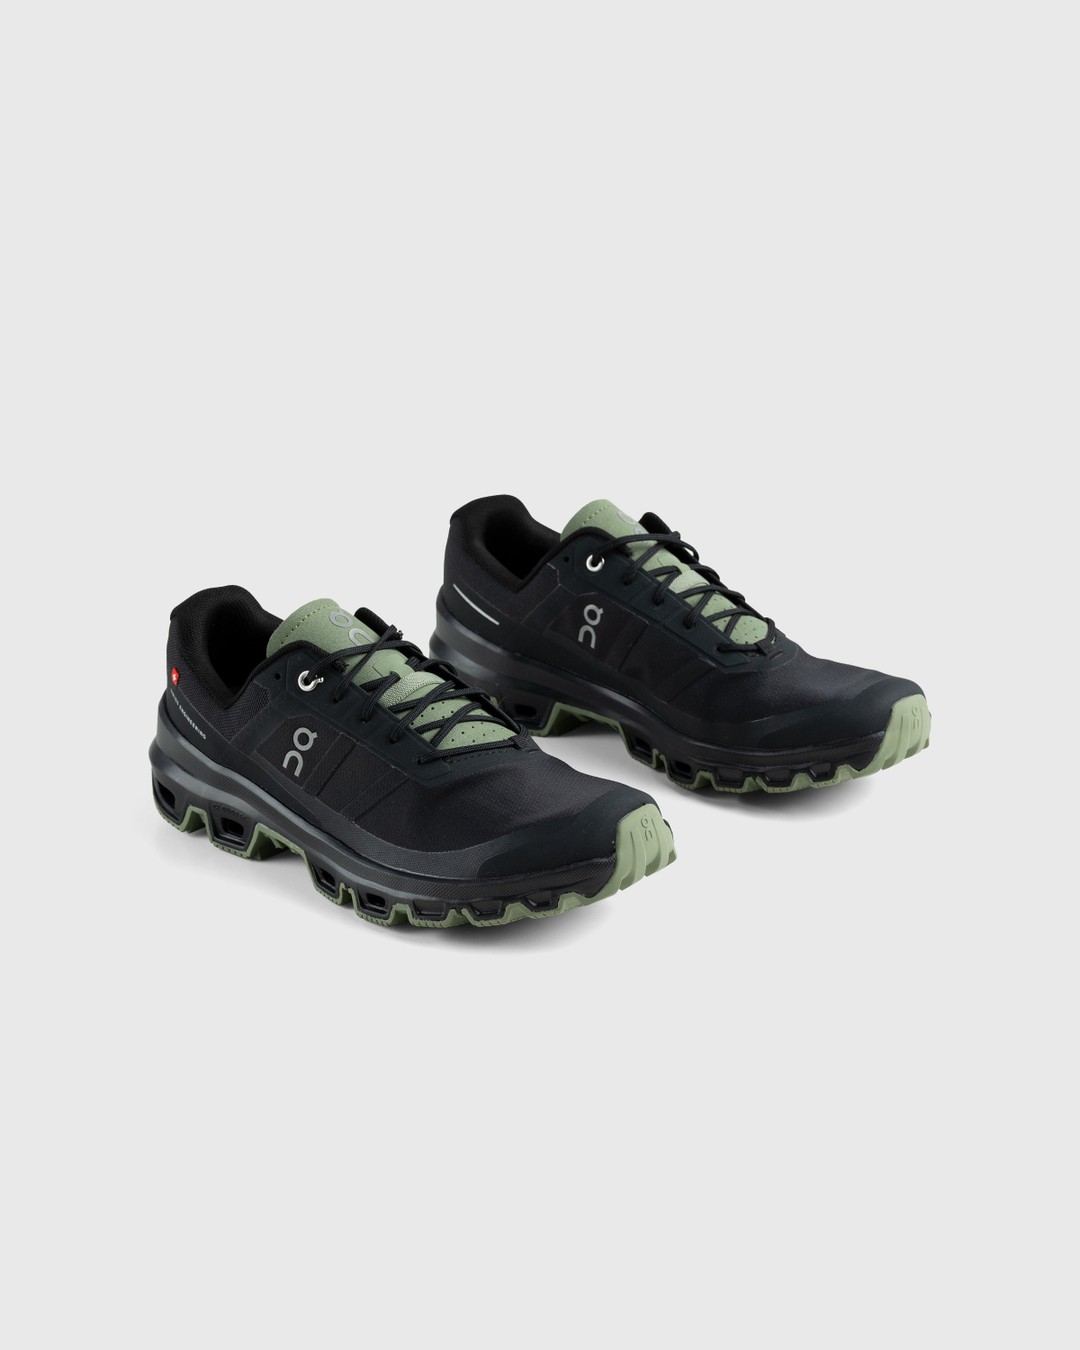 On – Cloudventure Black/Reseda - Low Top Sneakers - Black - Image 3